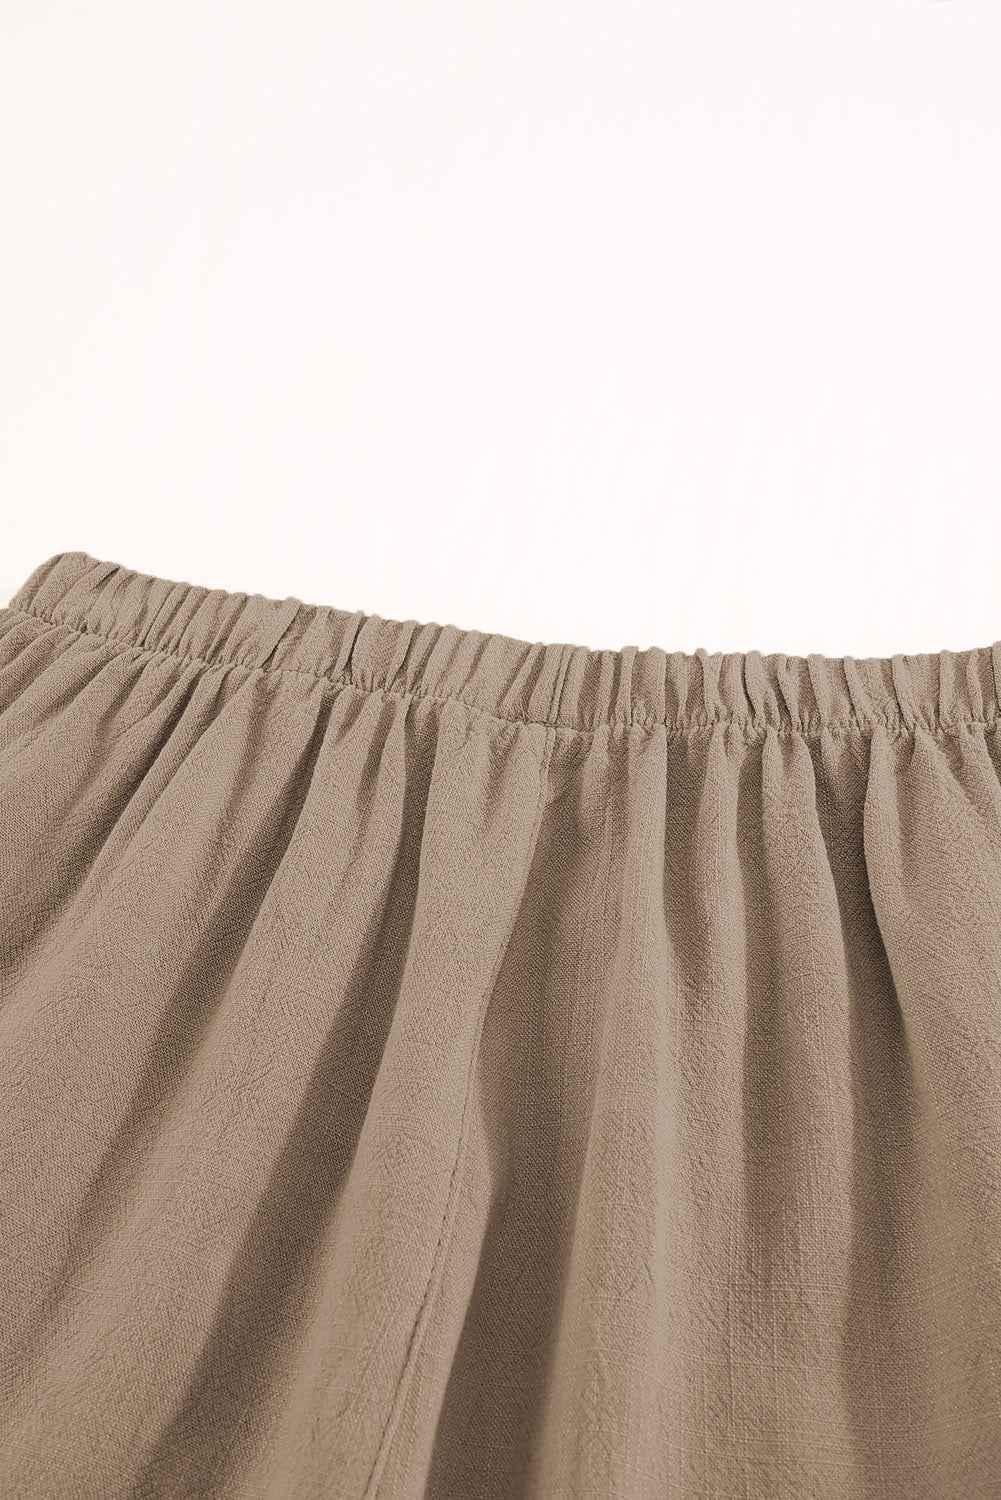 Khaki High Waist Pocketed Ruffle Shorts Casual Shorts JT's Designer Fashion